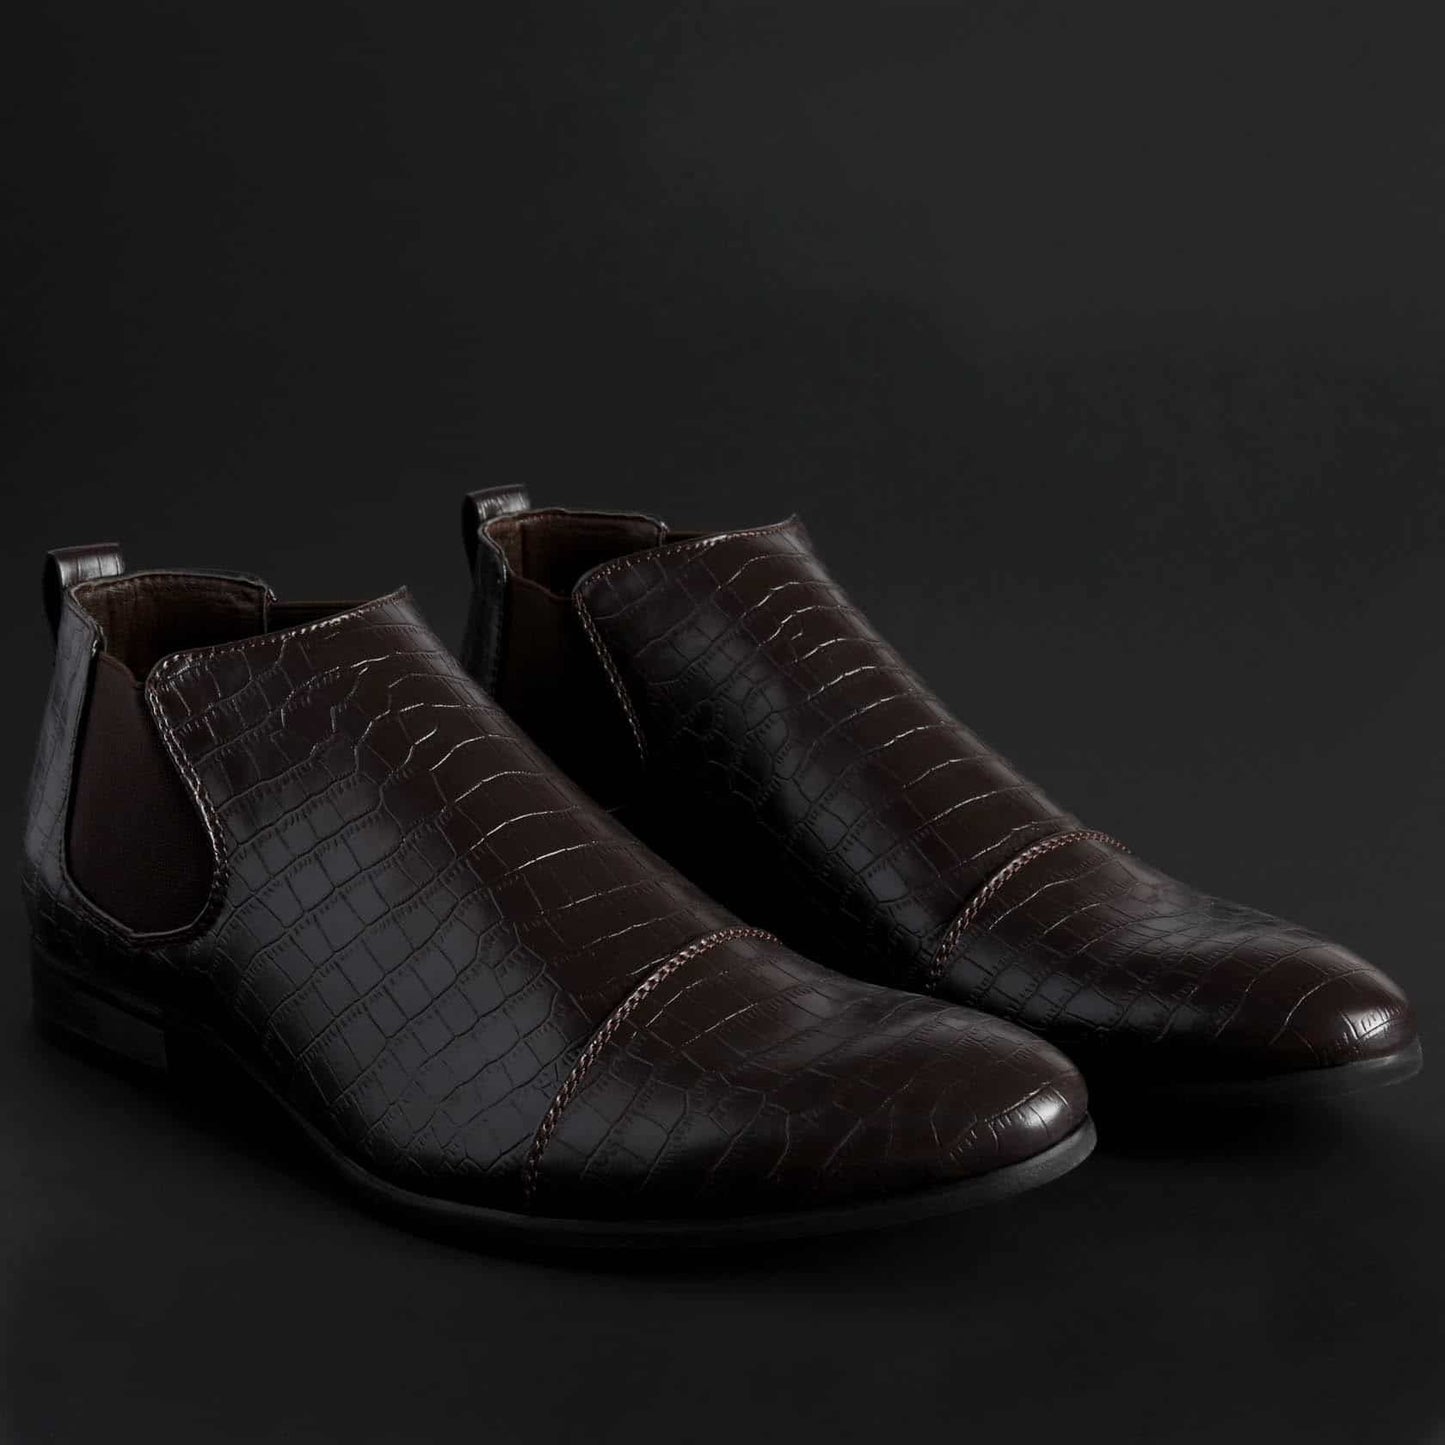 Duca Ankle boots For Men JONES